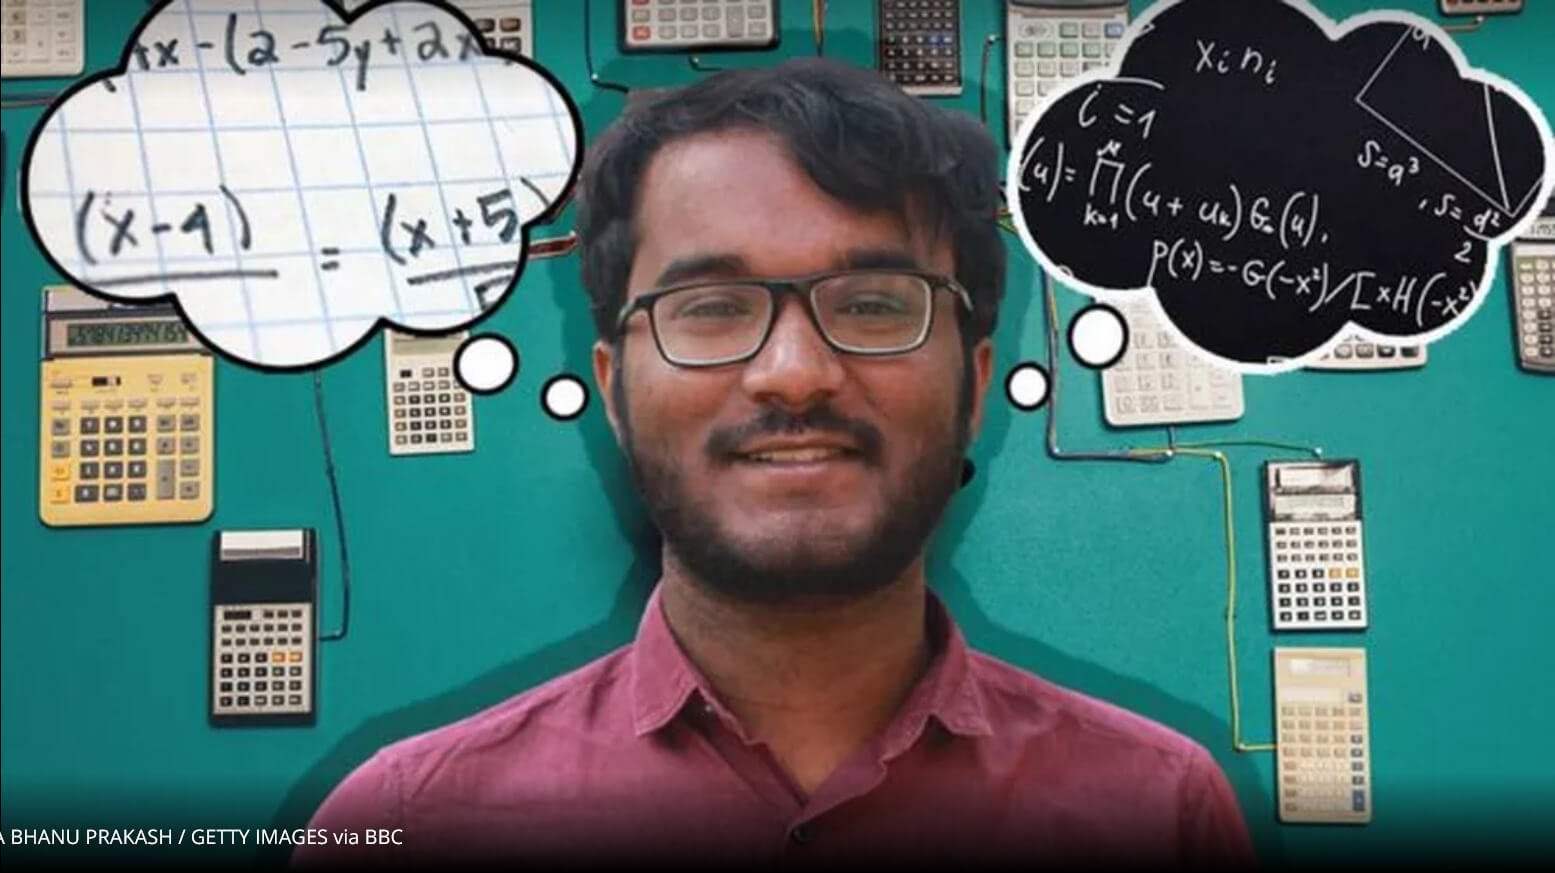 Indiano se torna “calculadora humana” depois de ter traumatismo craniano